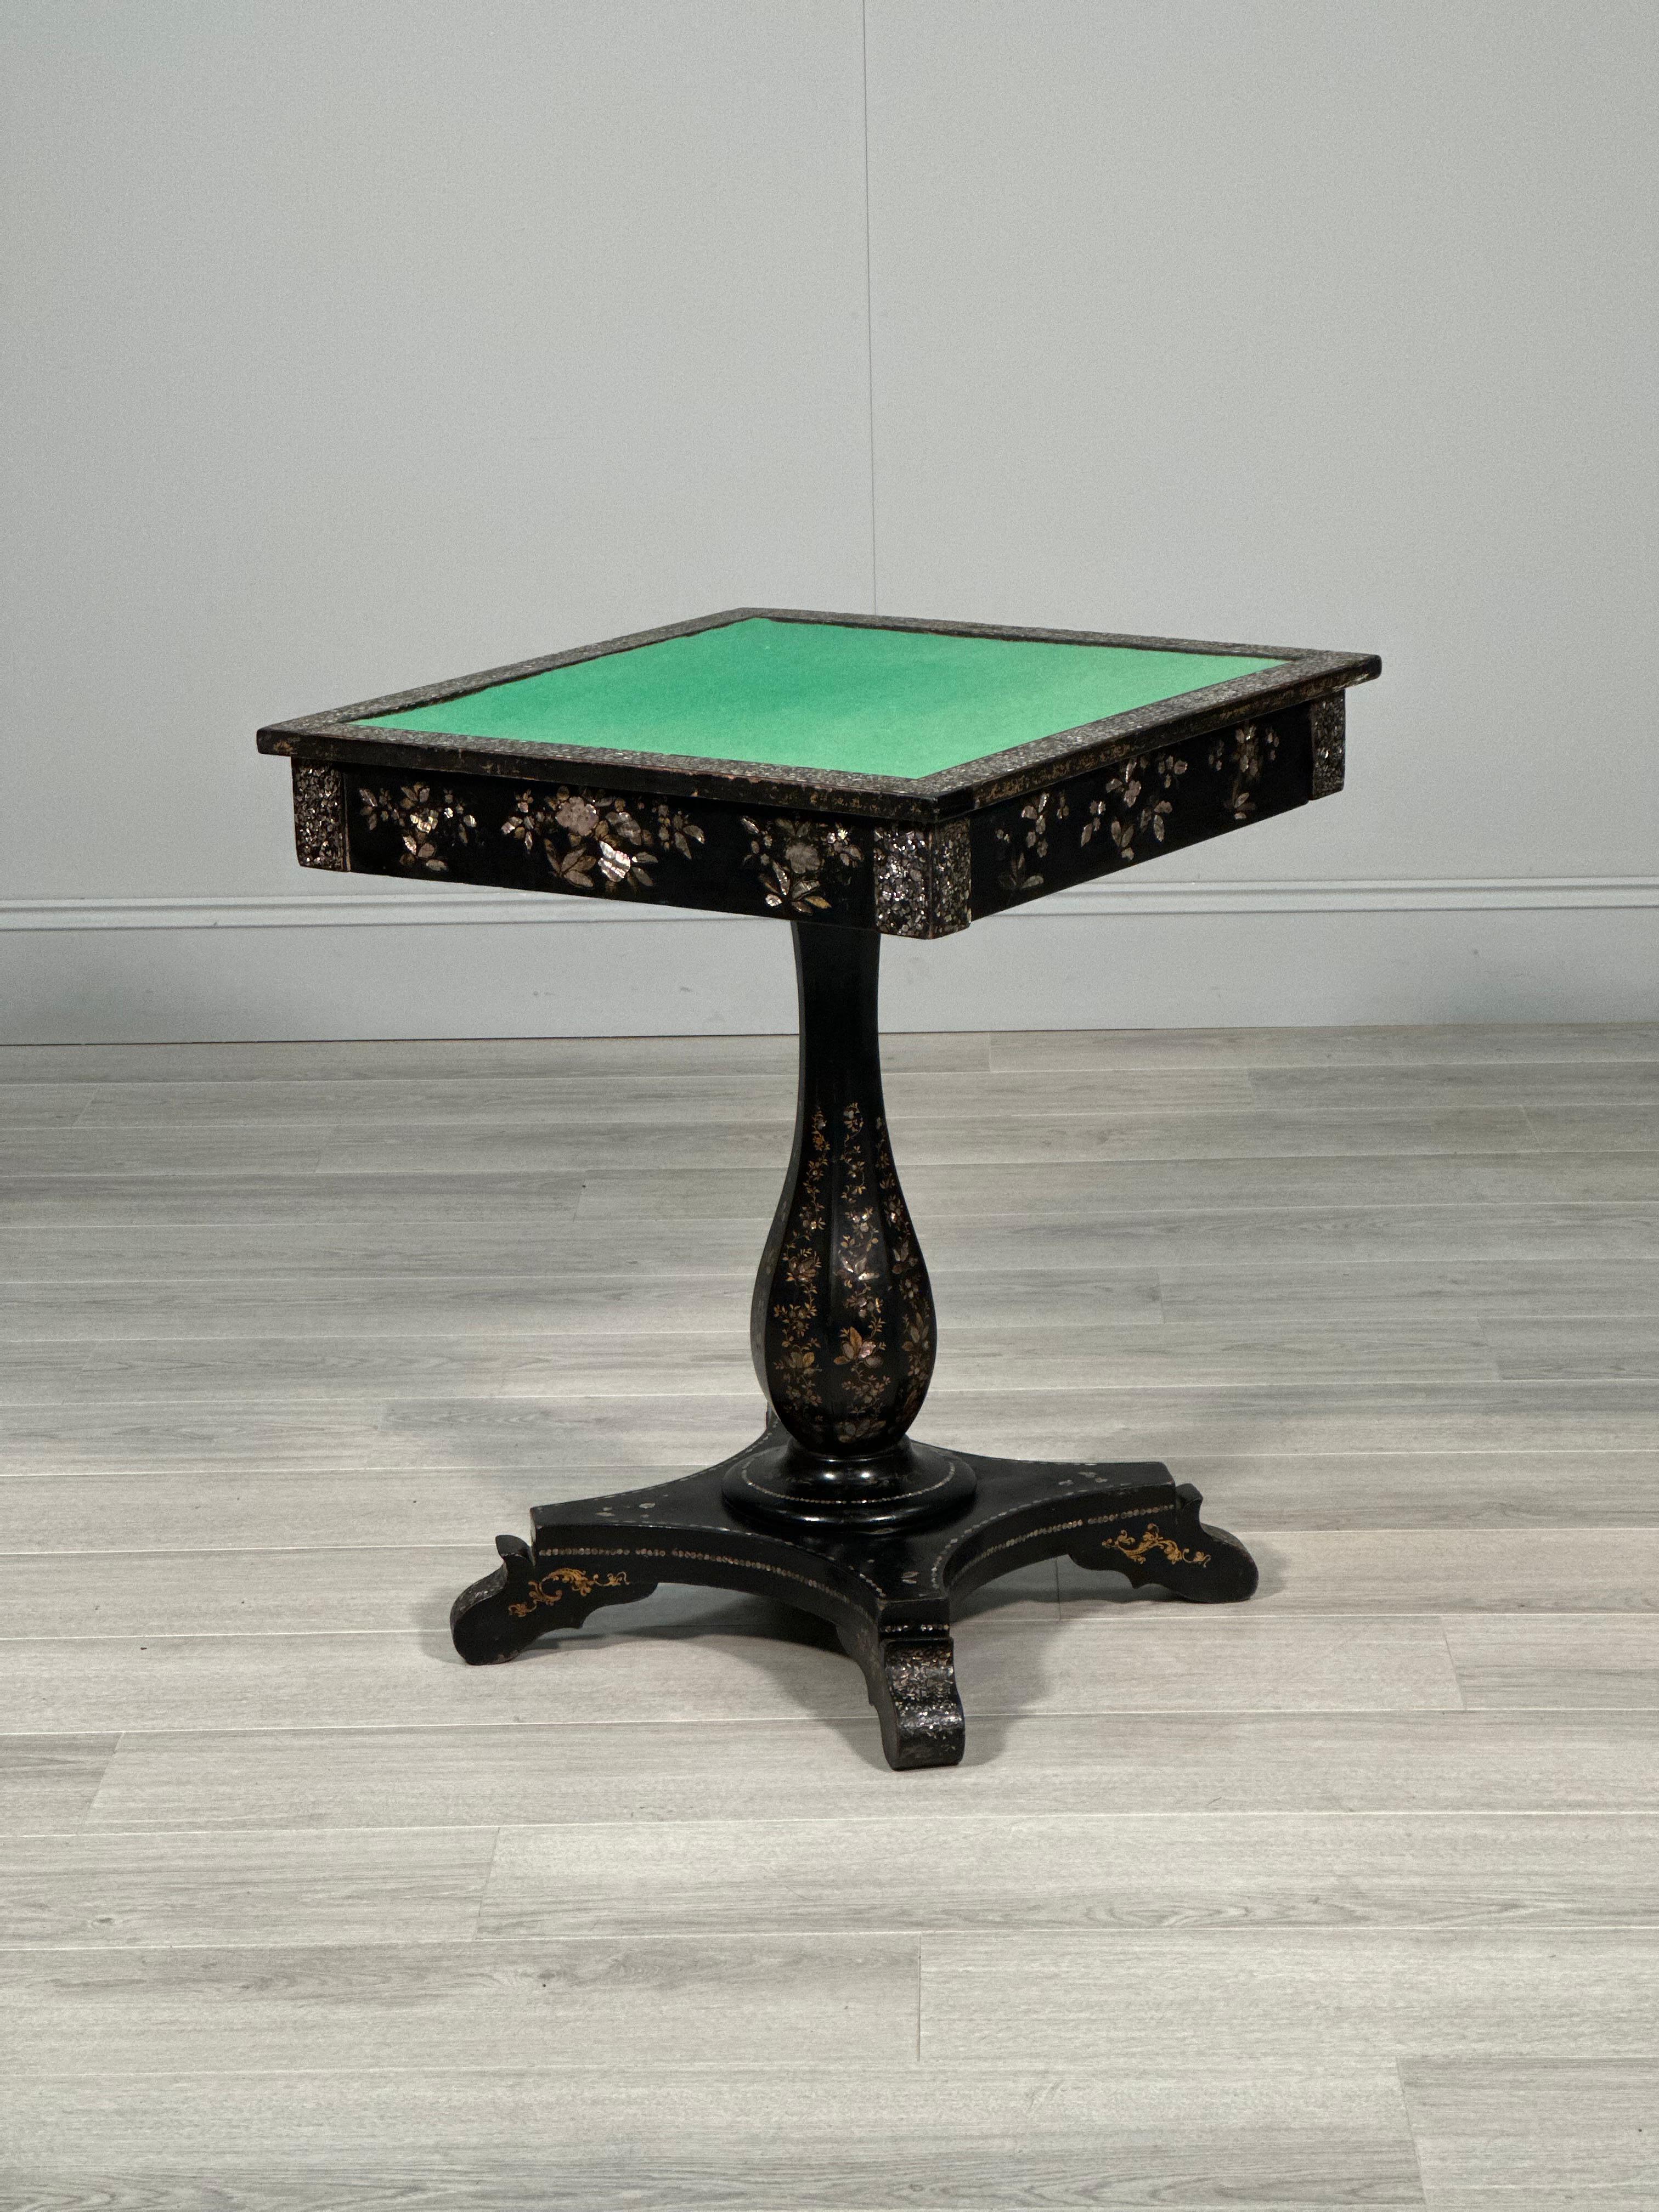 Table à jeux ancienne en papier mâché nacré ébonisé datant de la seconde moitié du XIXe siècle. La table a un cadre en chêne avec une finition en papier mâché et en nacre ébonisée, avec un tiroir en chêne sur un côté. La table est en très bon état